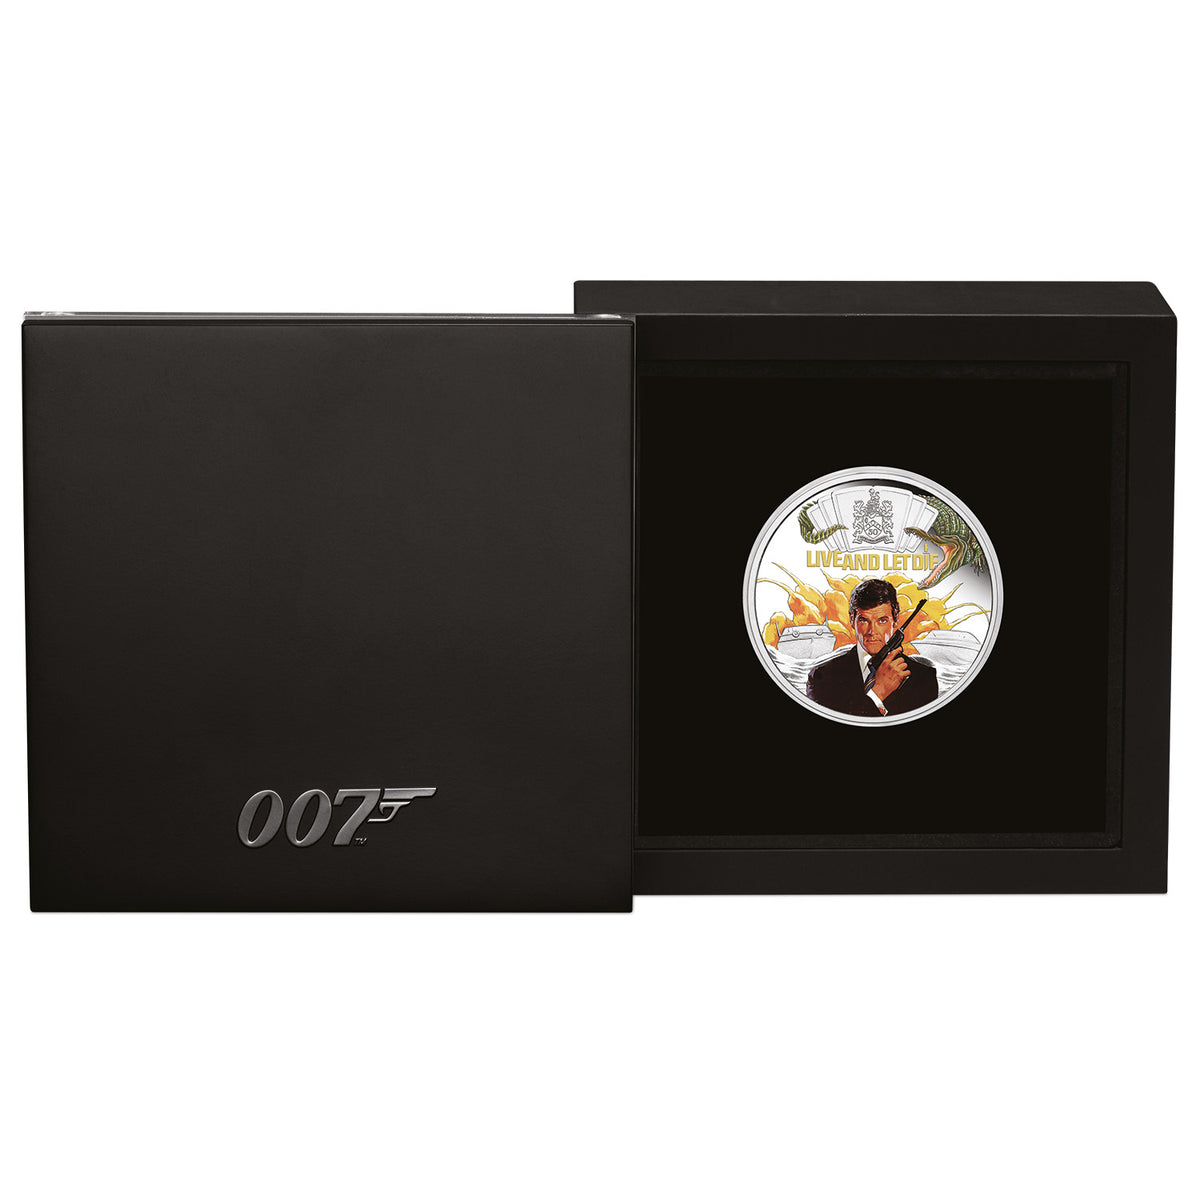 James Bond 1 oz Silbermünze in Proof-Farbe – Nummerierte Ausgabe zum 50. Jubiläum von „Live And Let Die“ – von der Perth Mint